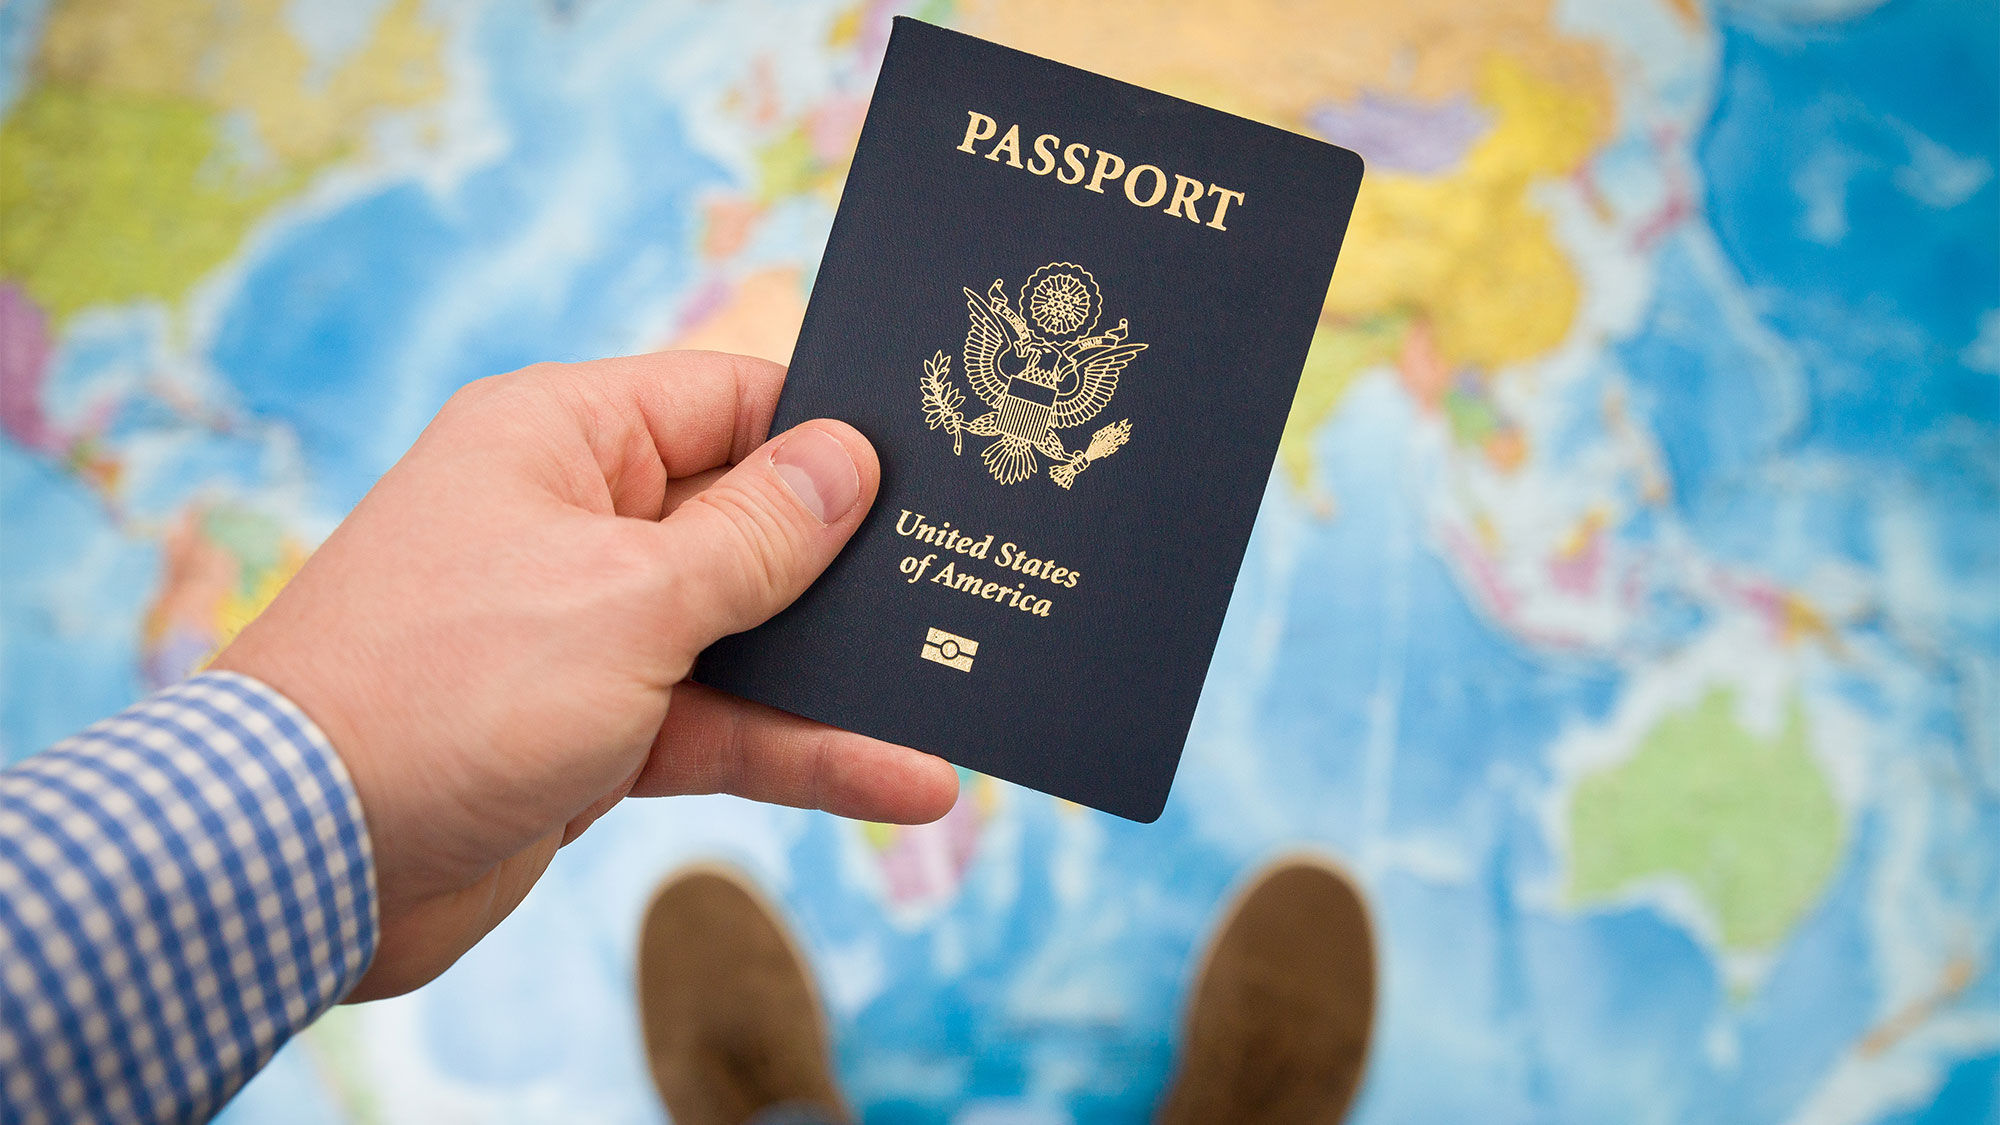 Passport [Credit: Goodmoments/Shutterstock.com]